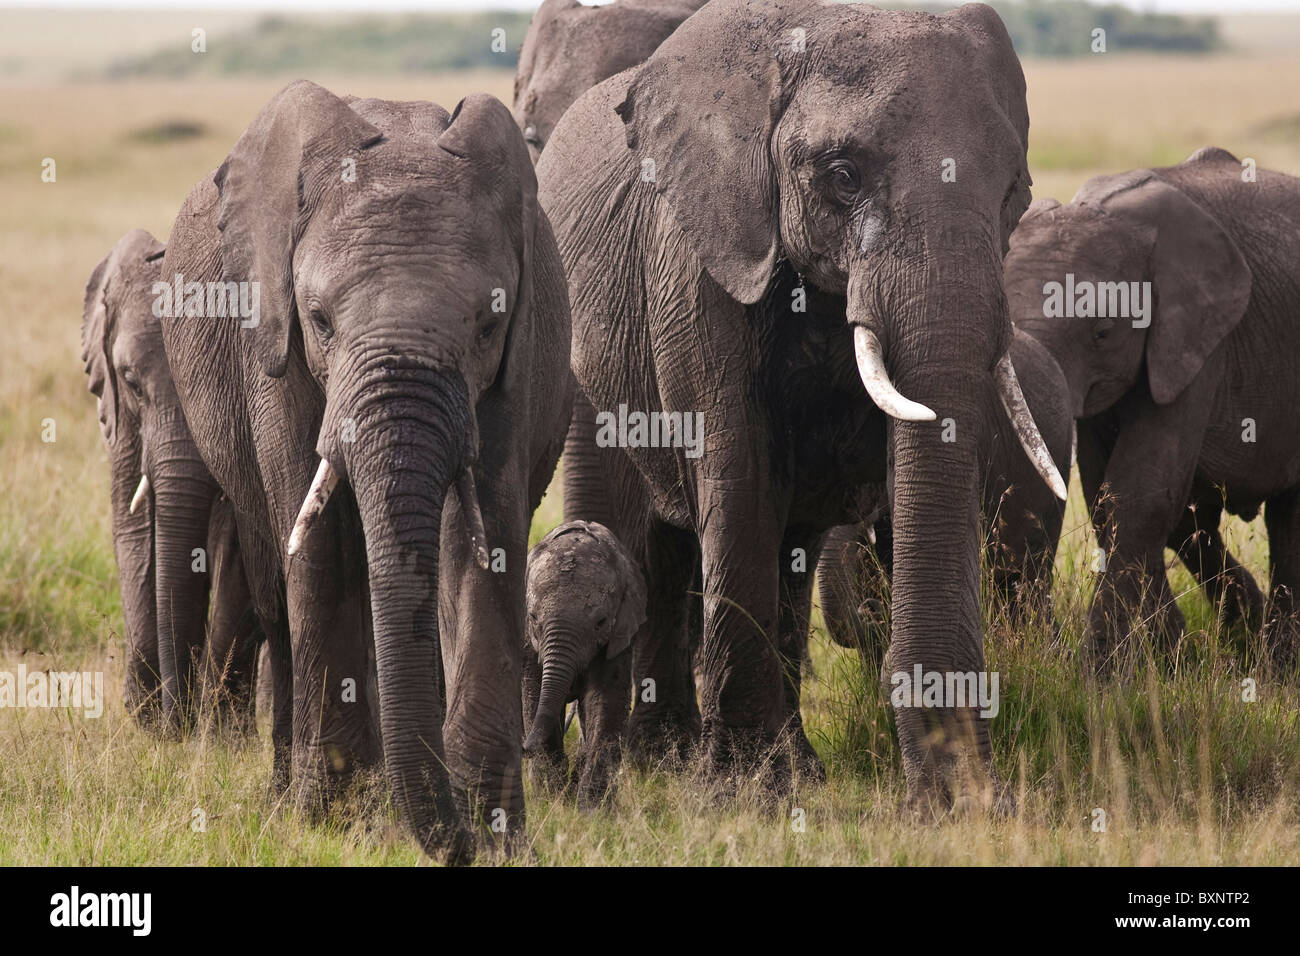 Elefantenherde mit Neugeborenen 2 Wochen alten Baby-Elefant in der Masai Mara National Reserve Kenia Afrika. Foto: Jeff Gilbert Stockfoto